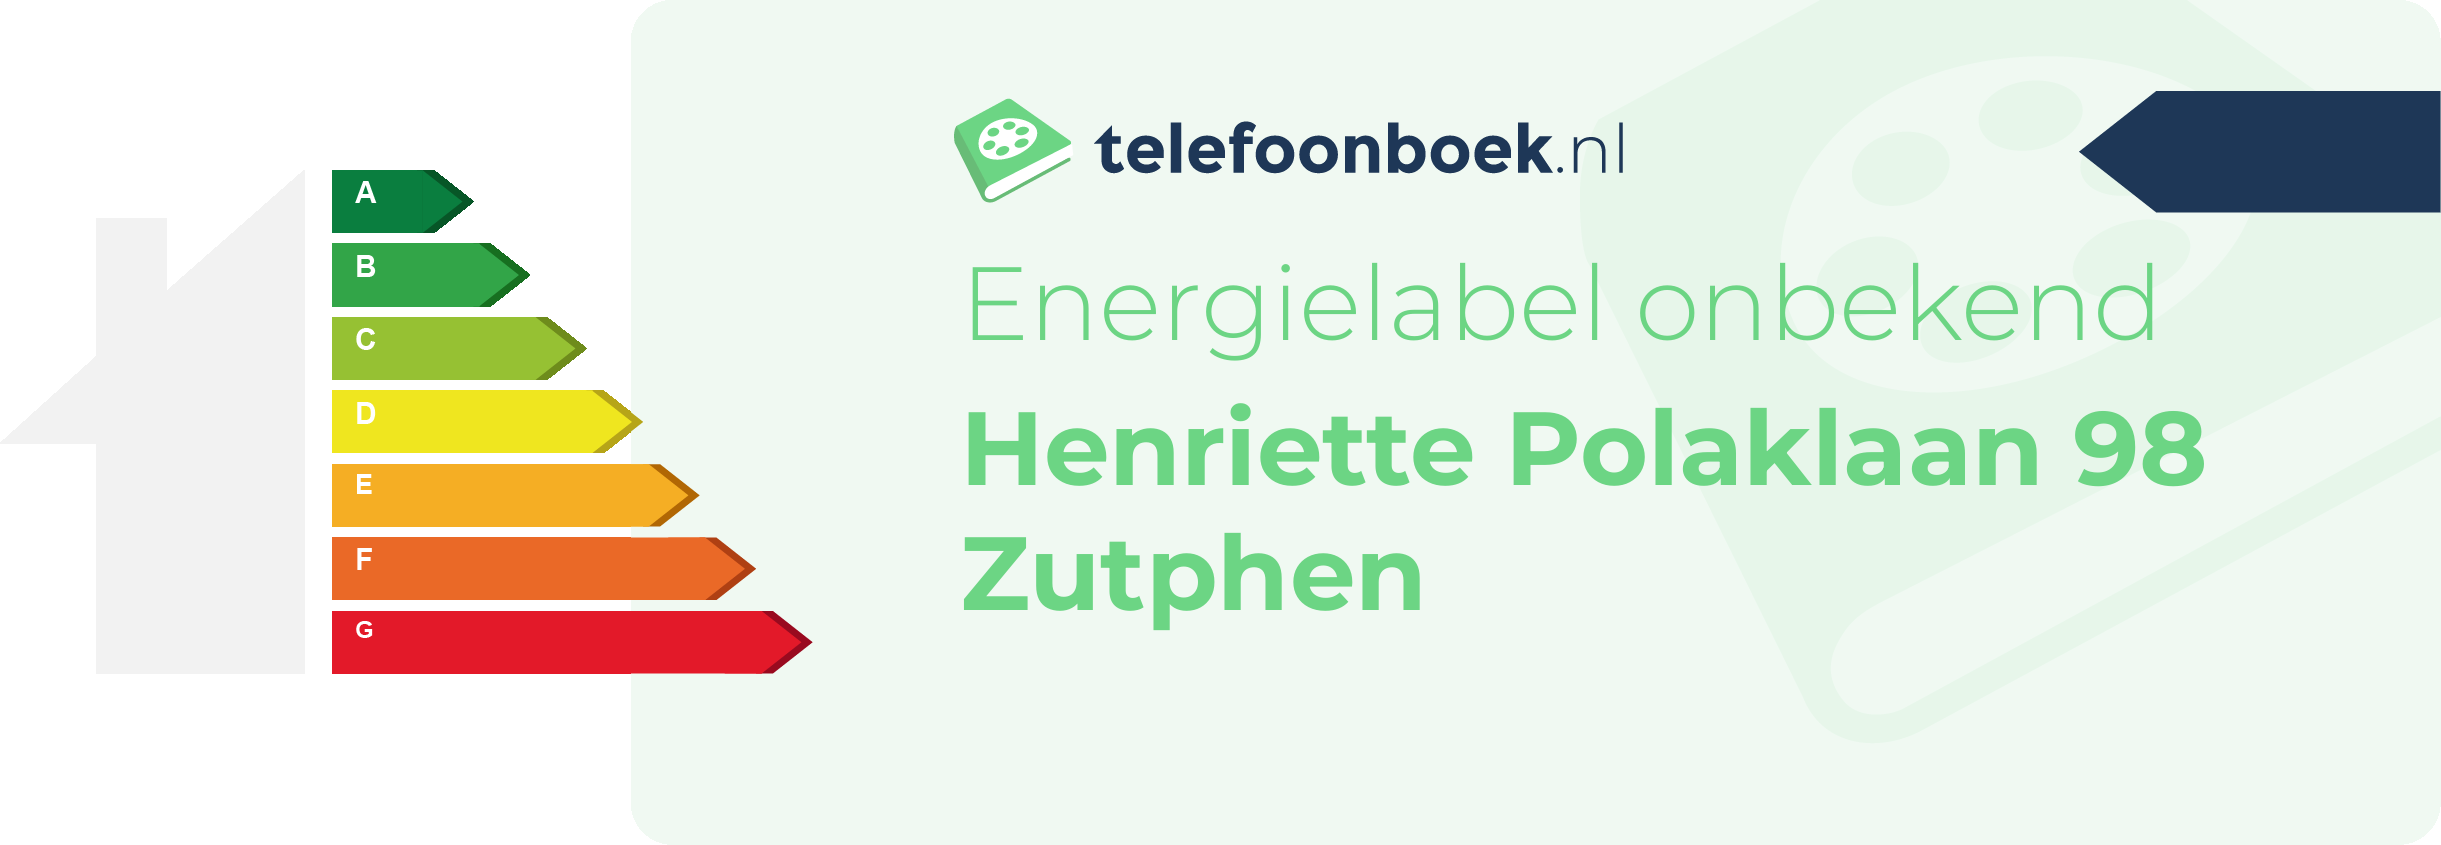 Energielabel Henriette Polaklaan 98 Zutphen